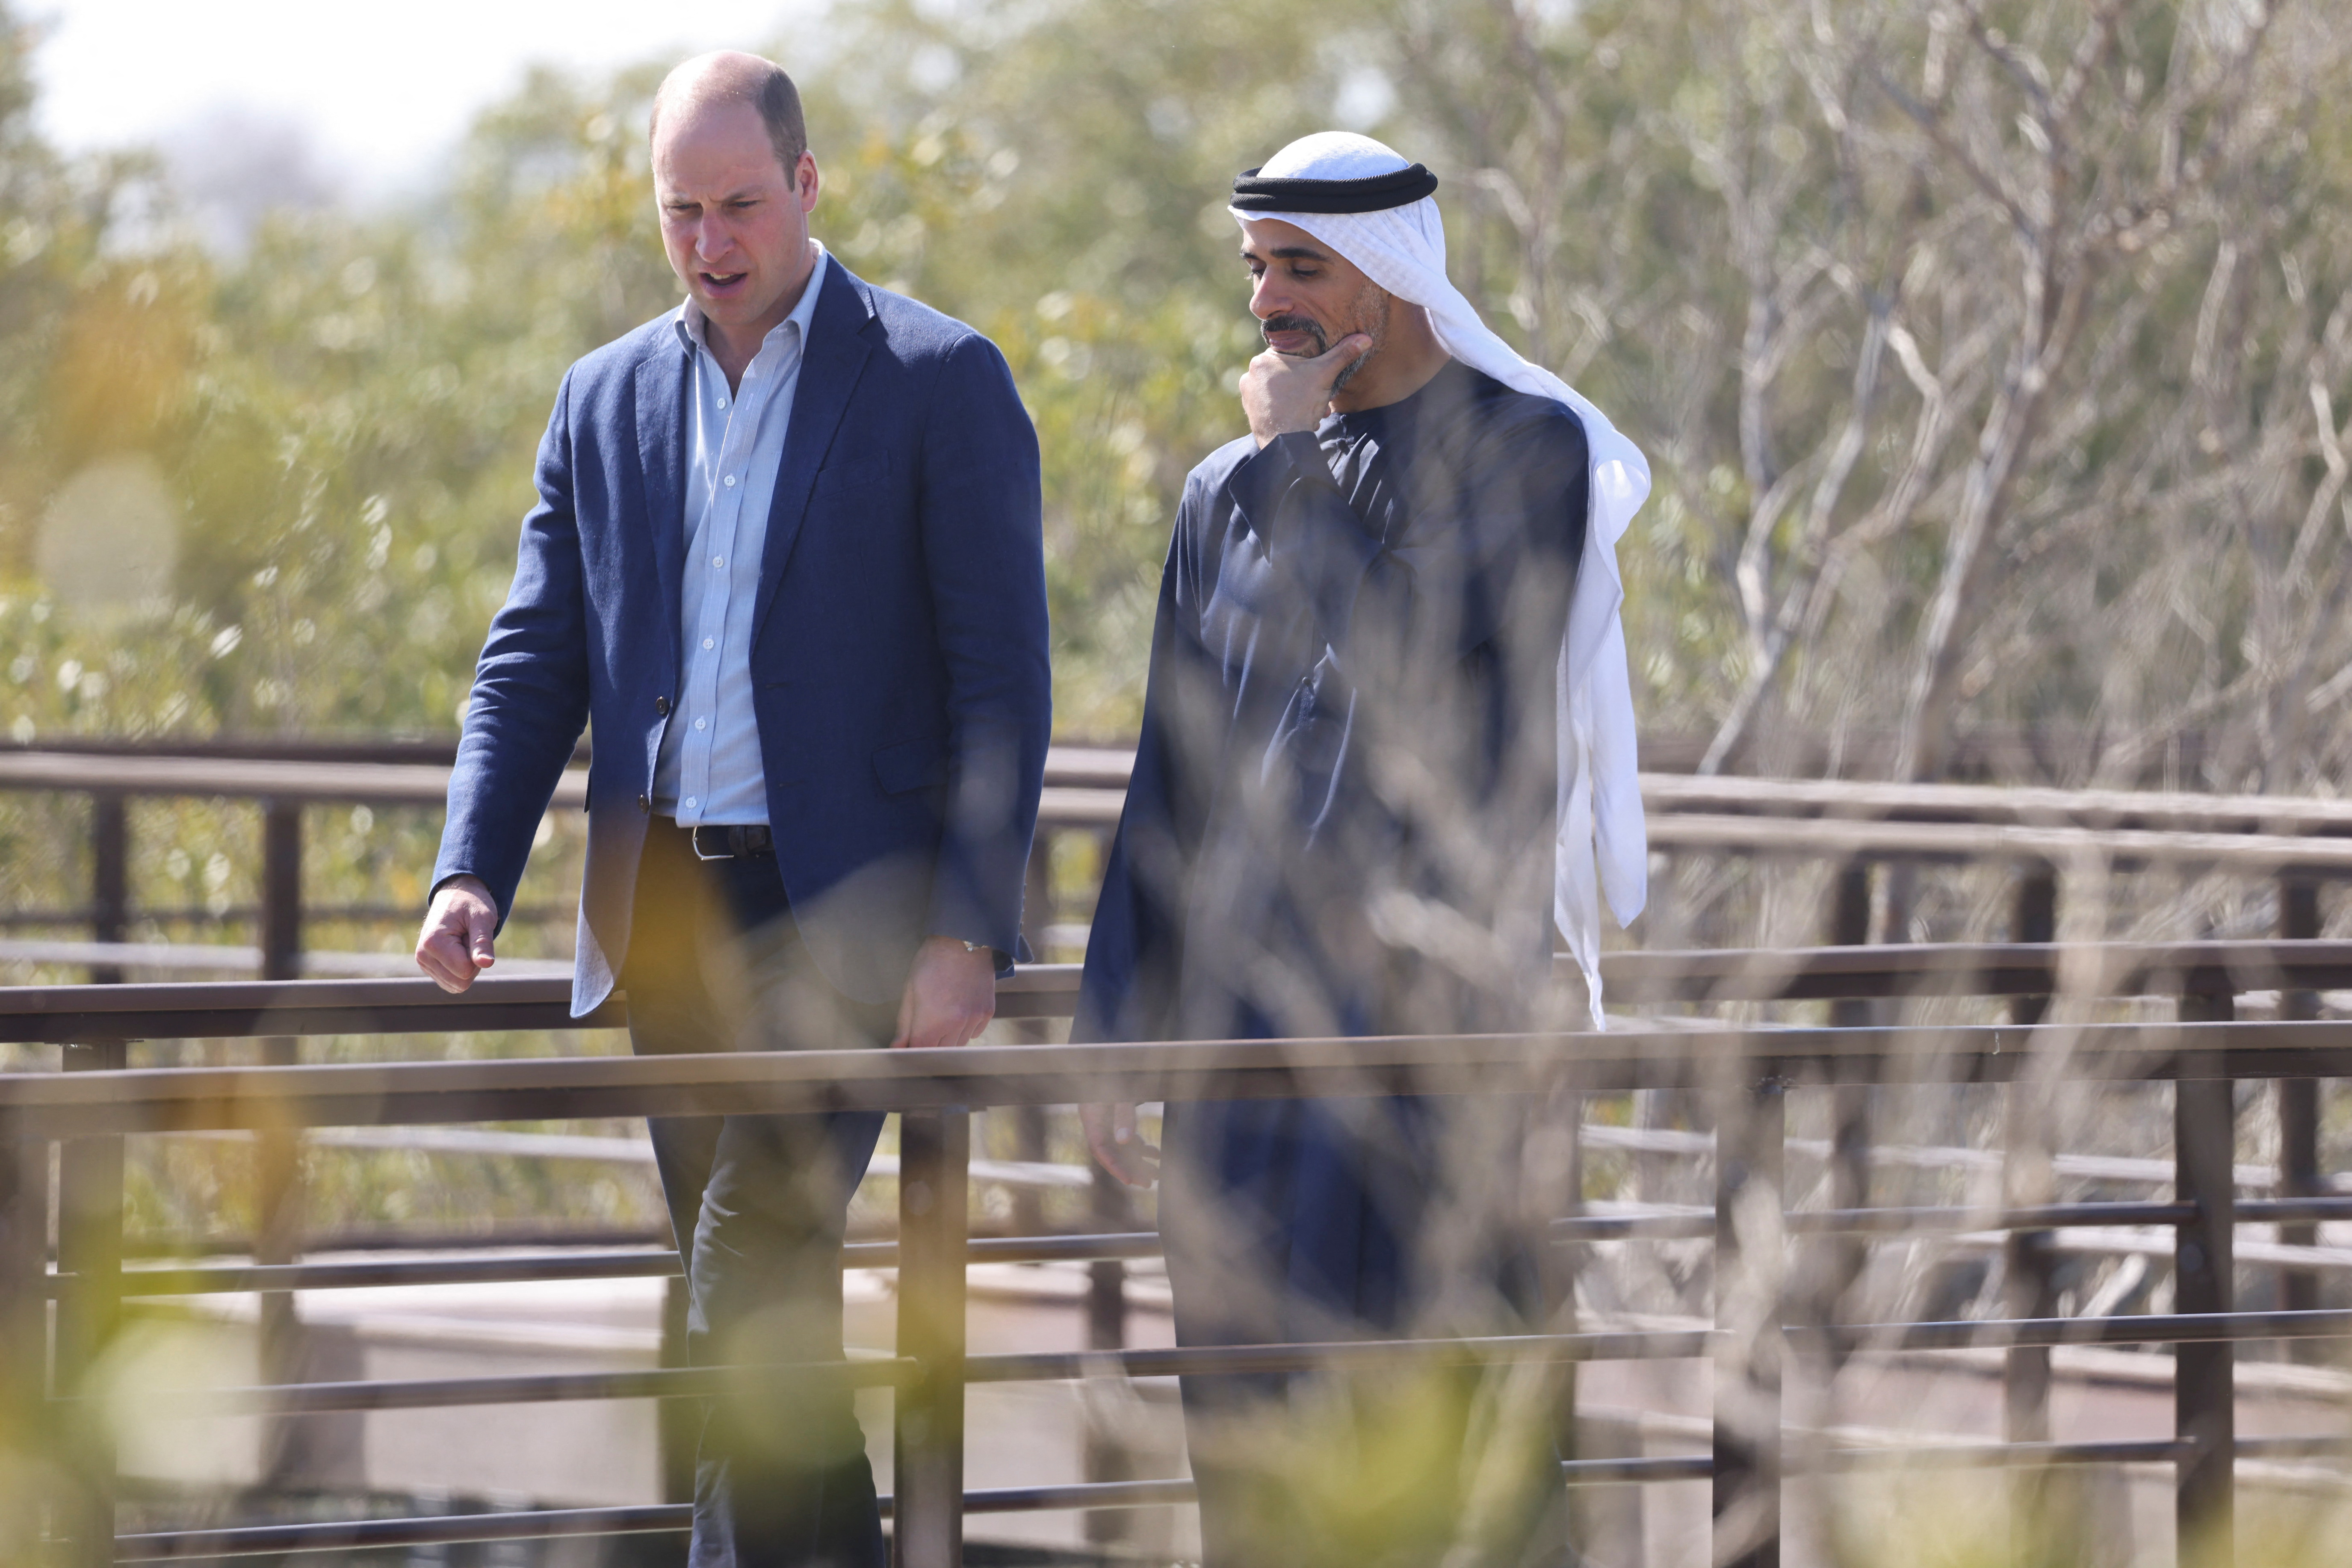 Prince William visits UAE as Britain seeks to deepen ties Reuters image